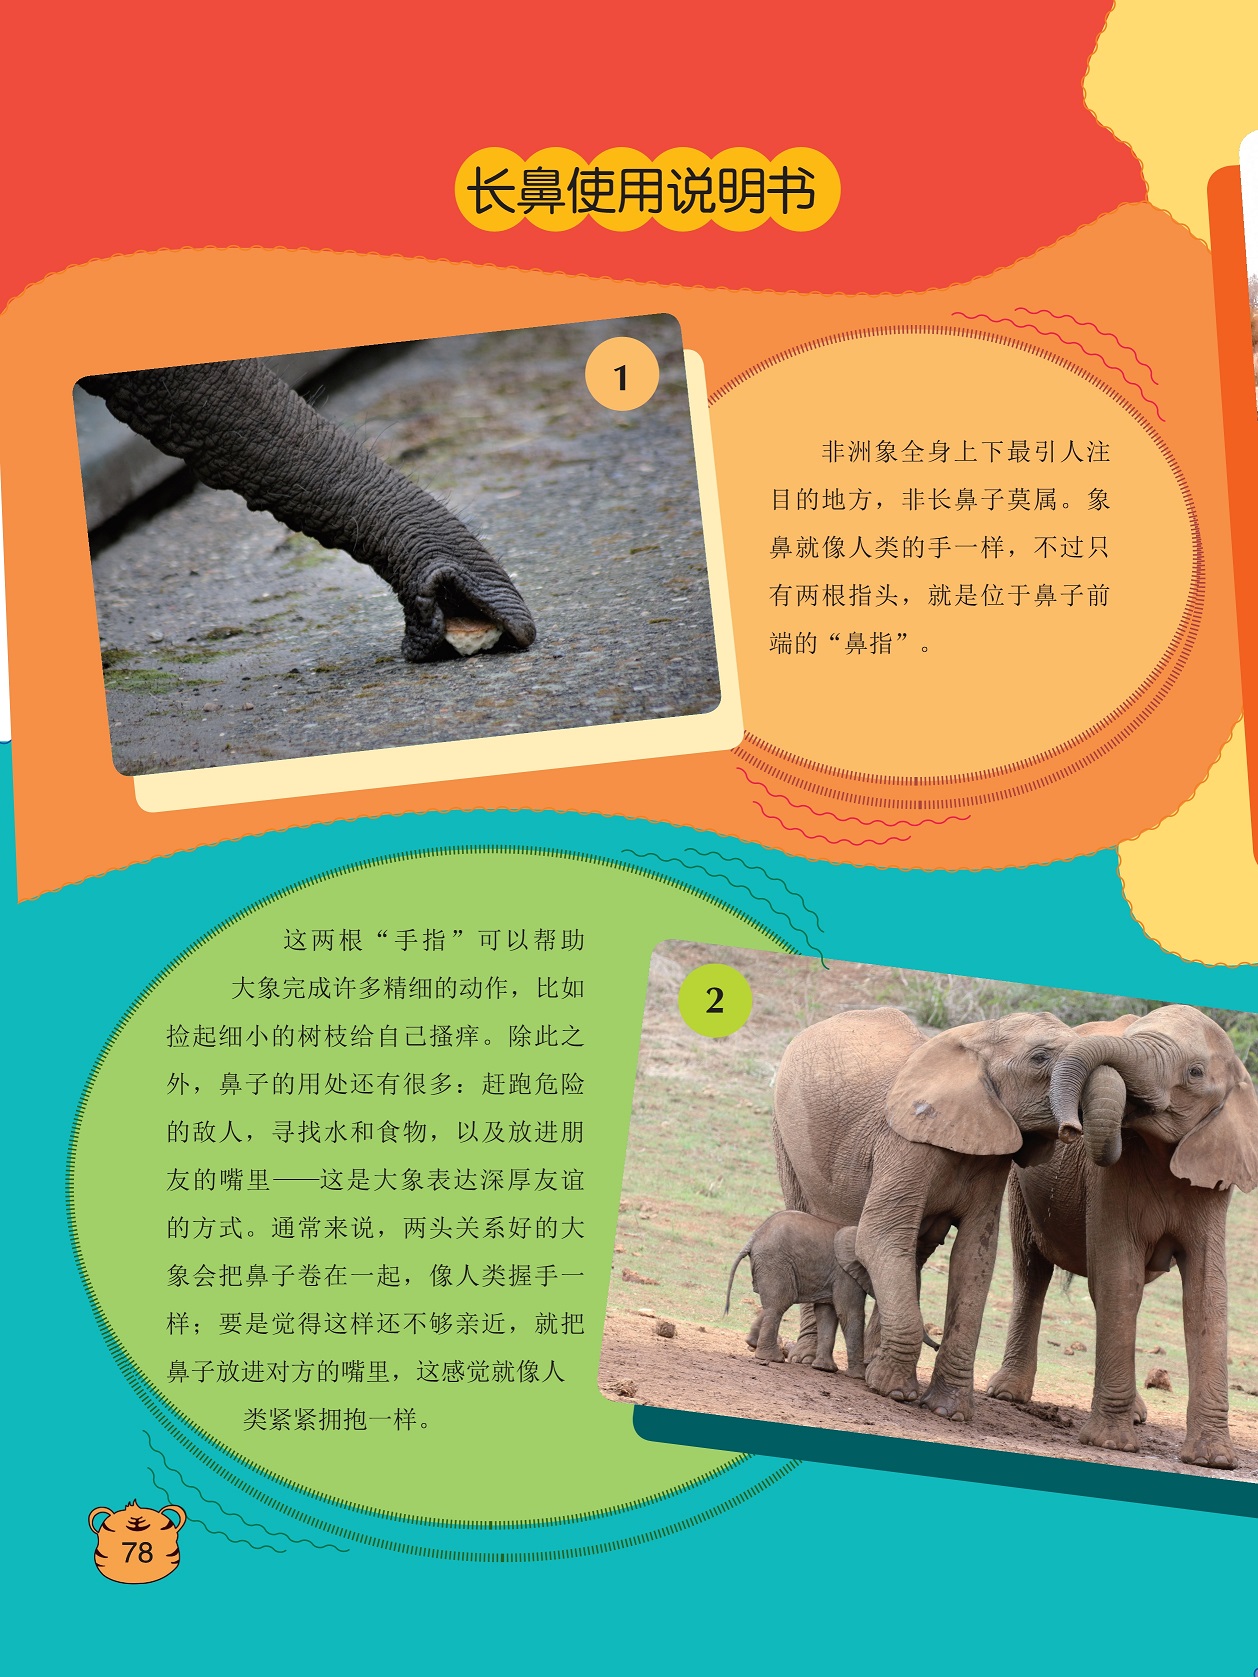 长鼻使用说明书,大象表达深厚友谊的方式